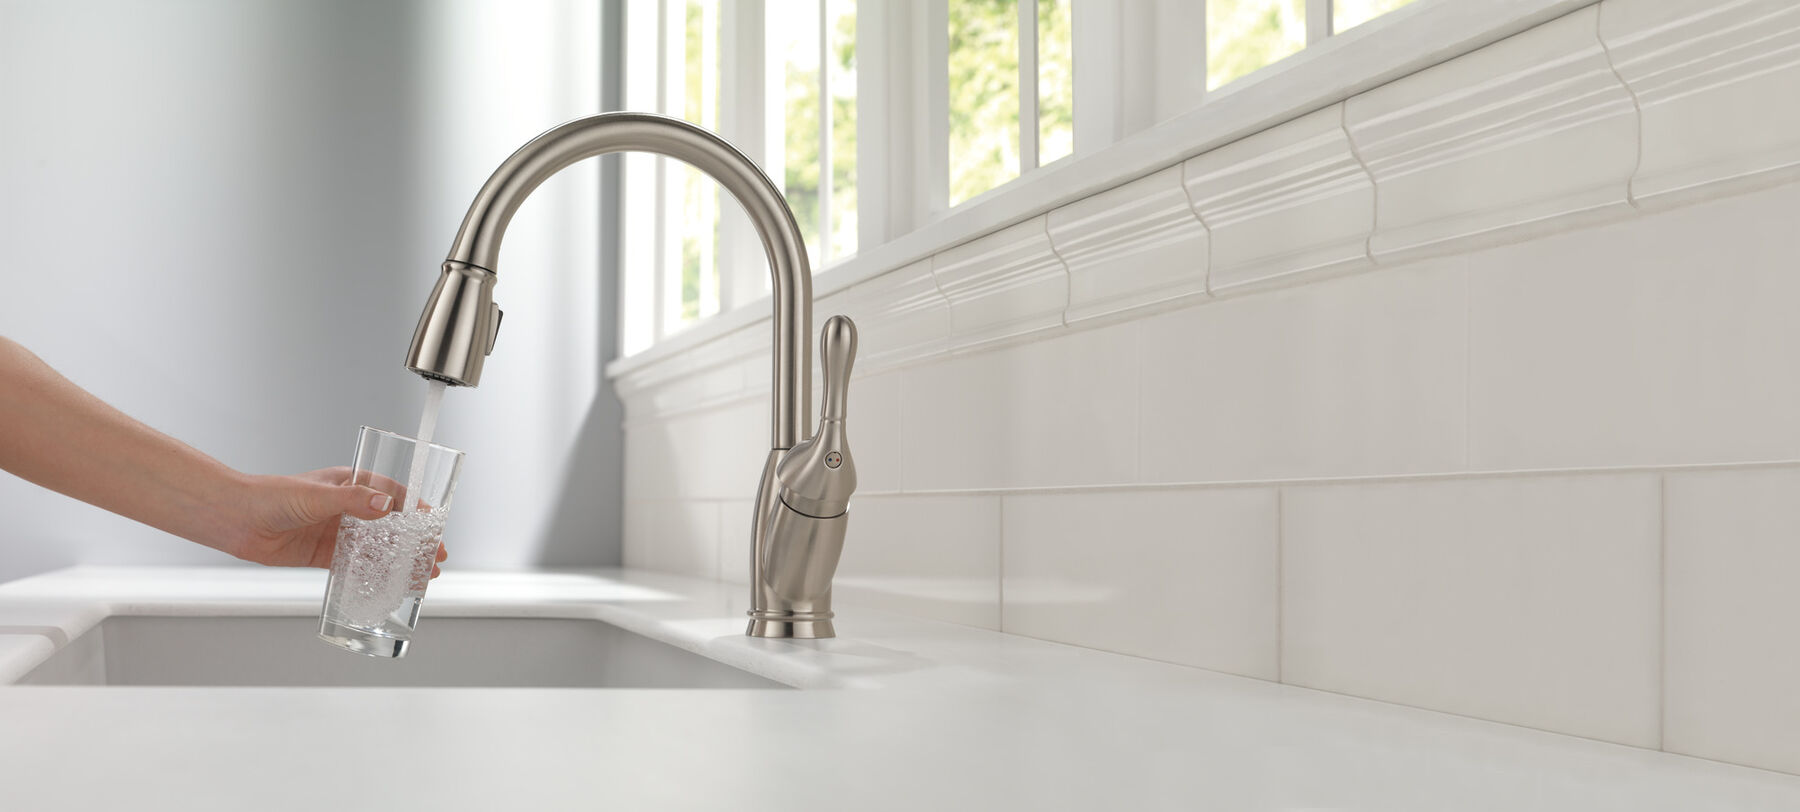 Brita Total 360 Under Sink Kitchen & Bathroom Water Filtration